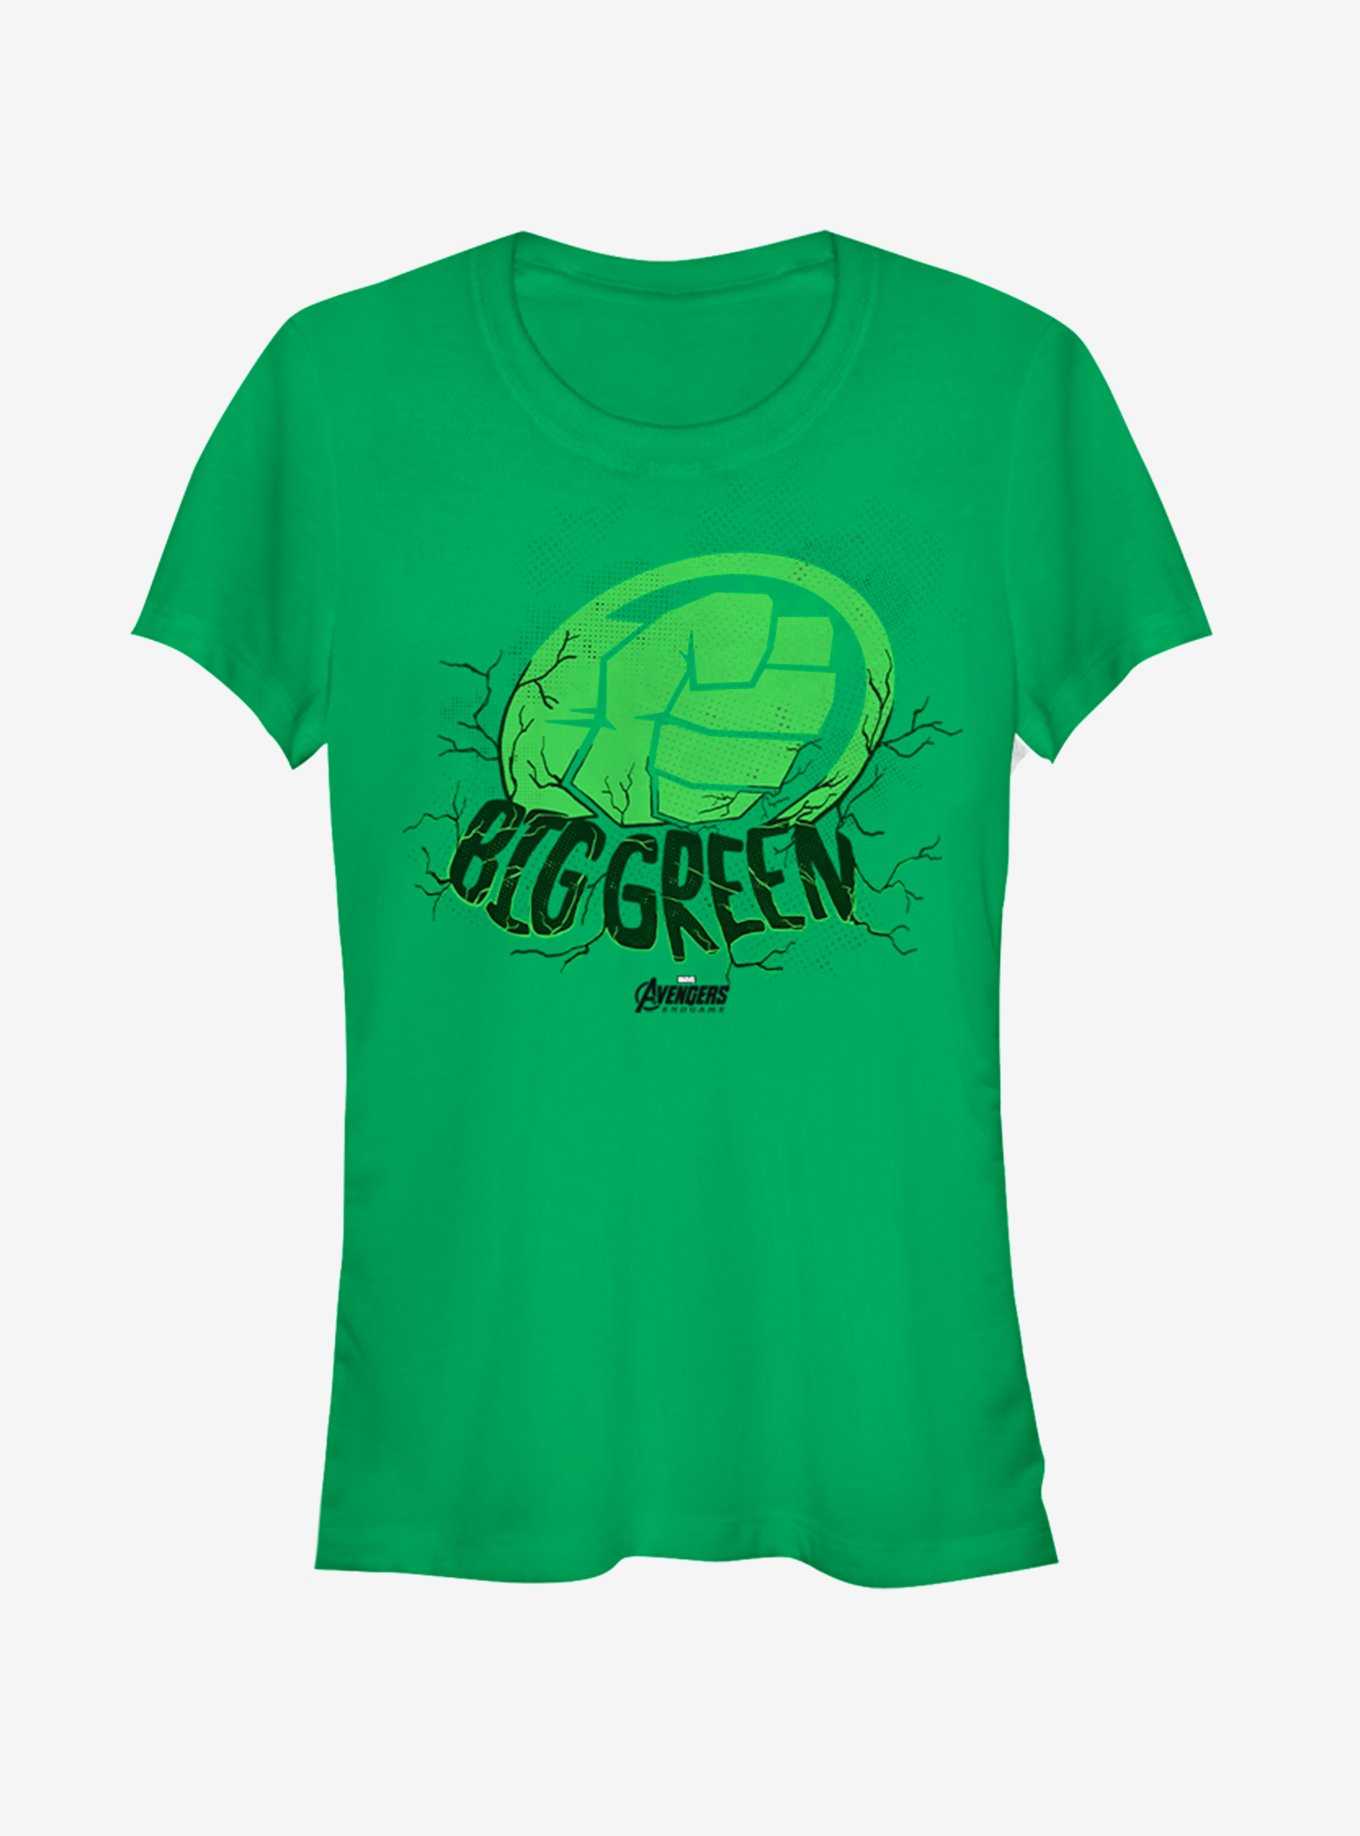 Marvel Avengers: Endgame Big Green Girls Kelly Green T-Shirt, , hi-res